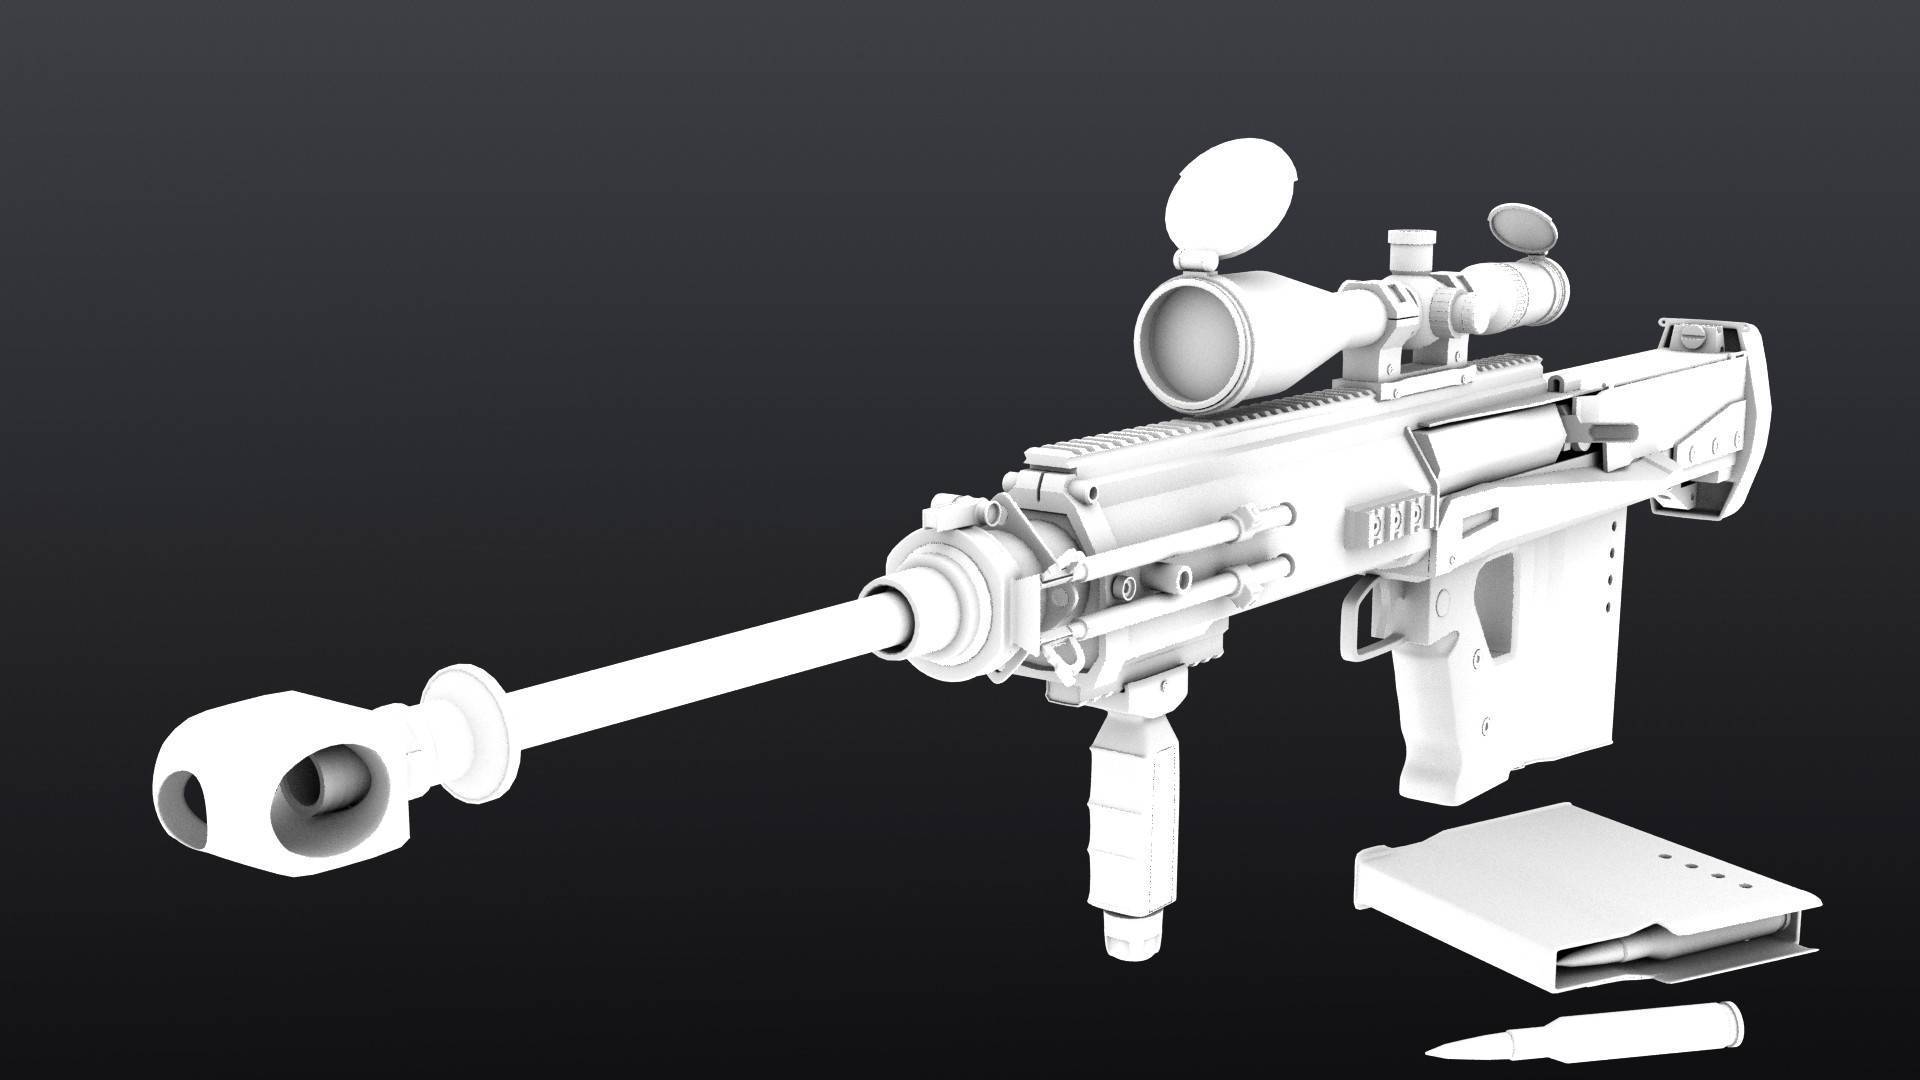 Gepard model 6 lynx, gm6 - уникальная снайперская винтовка, история разработки и достоинства, конструкция и характеристики, производство и неполная разборка